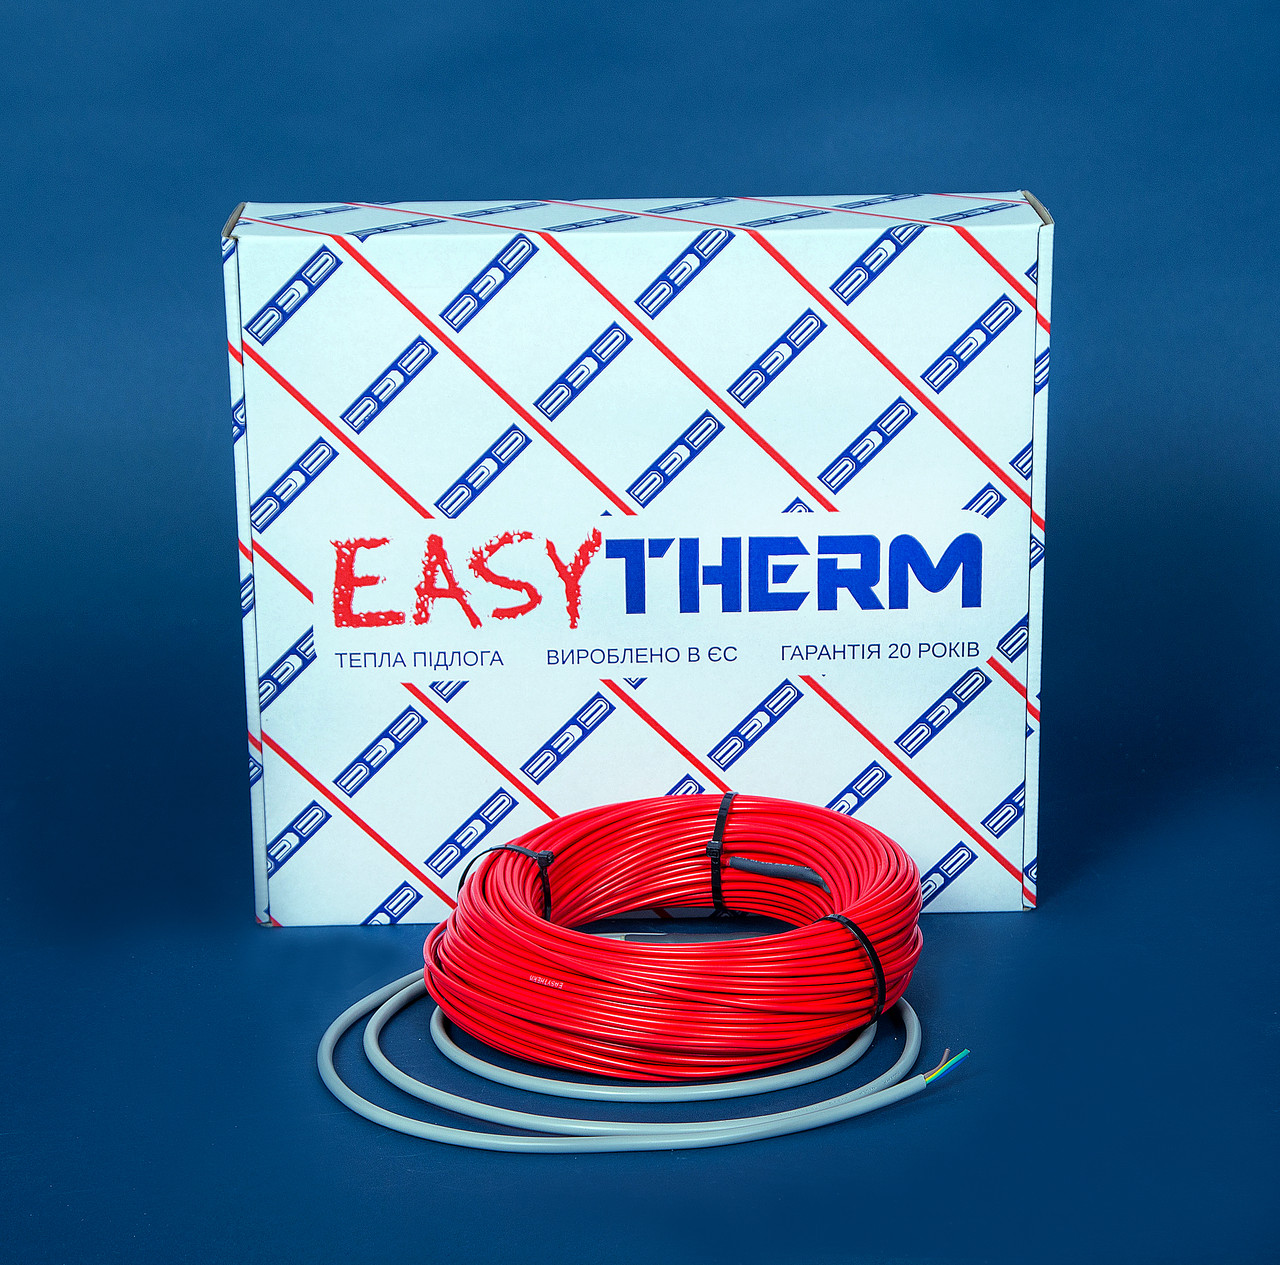 Электрический теплый пол EasyTherm Easycable 65.0 отзывы - изображения 5